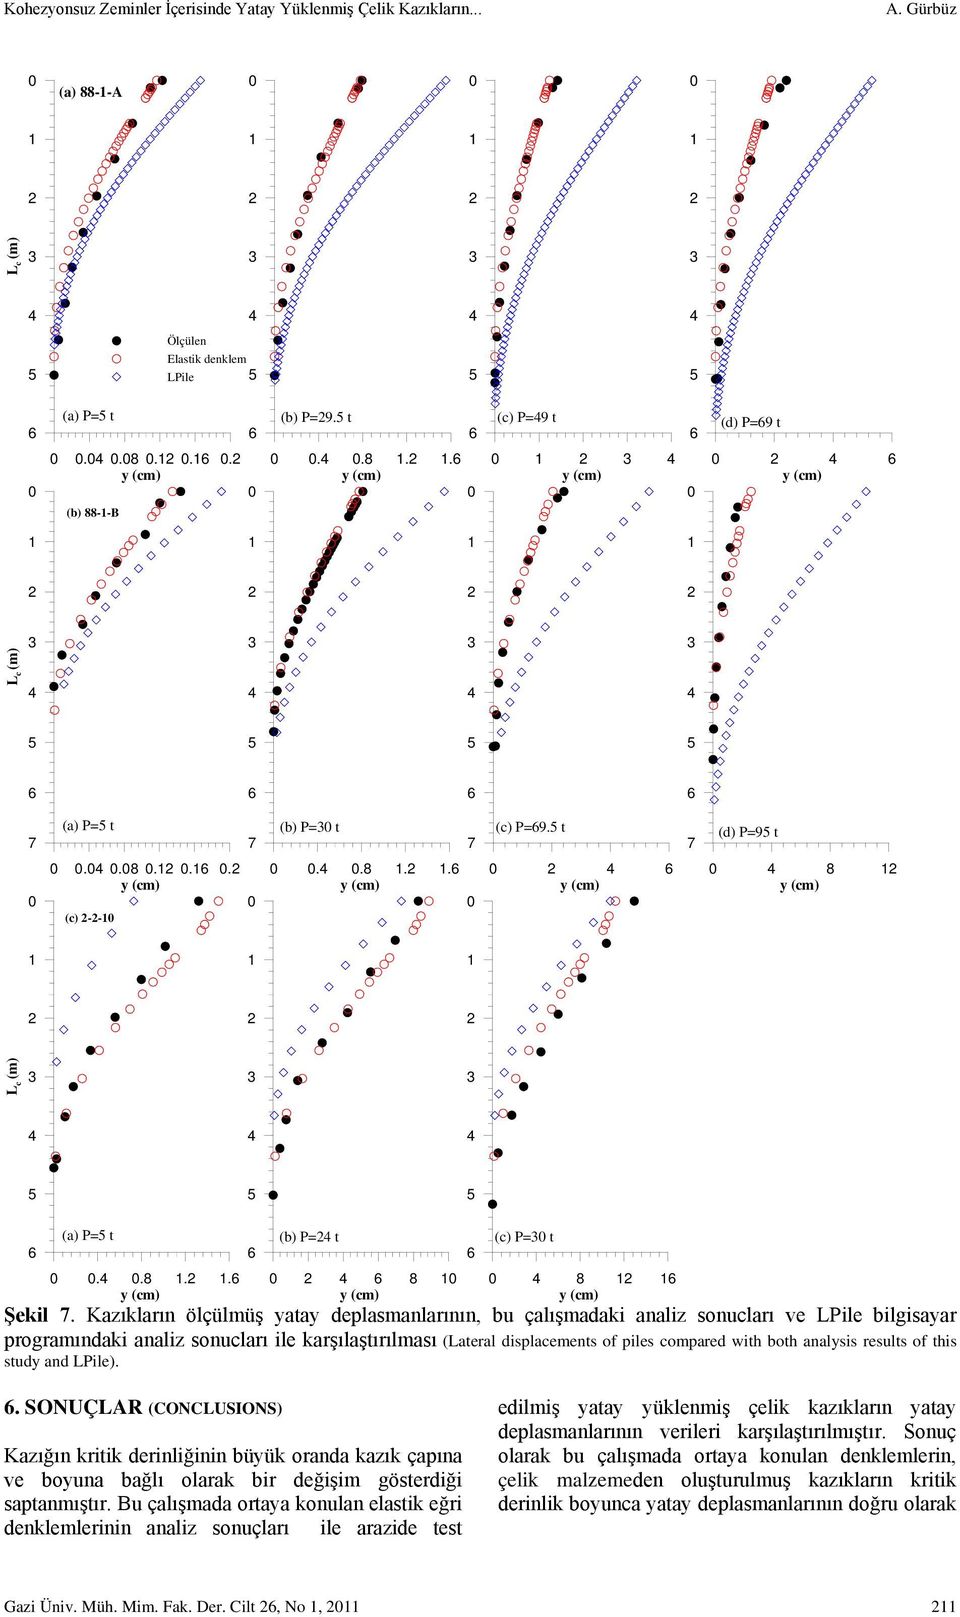 Kazıkların ölçülmüş yatay deplasmanlarının, bu çalışmadaki analiz sonucları ve LPile bilgisayar programındaki analiz sonucları ile karşılaştırılması (Lateral displacements of piles compared with both